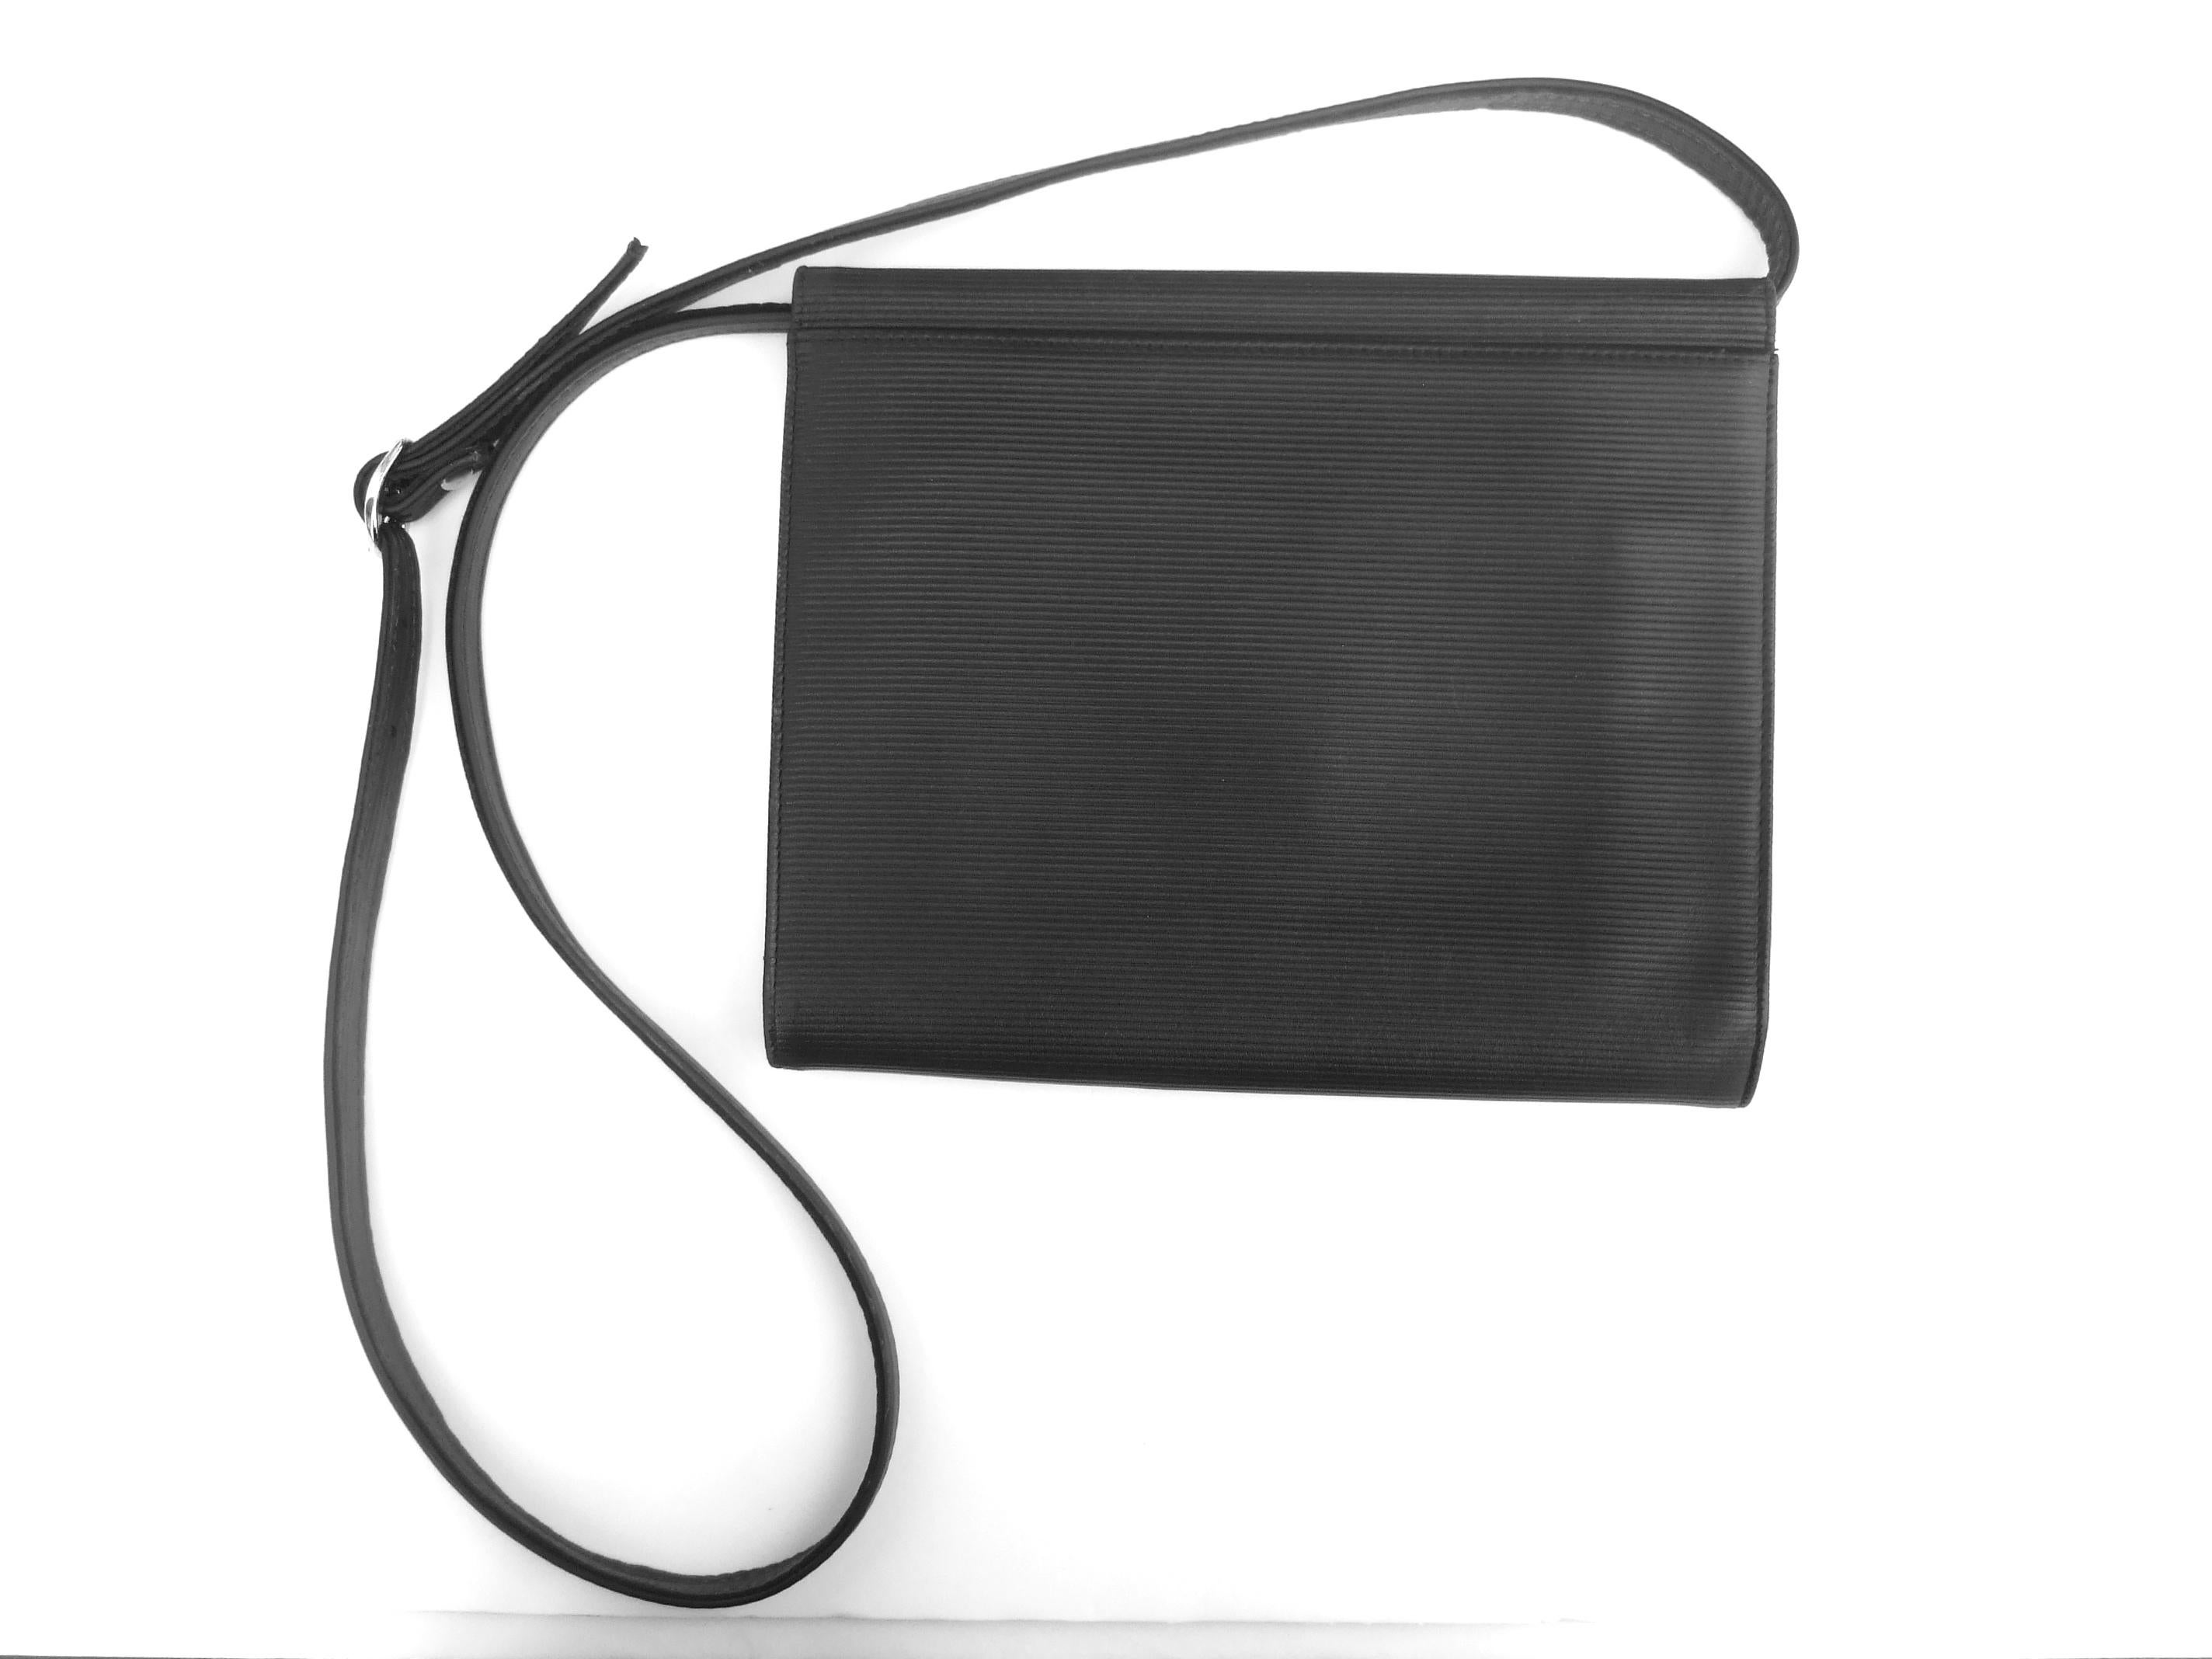 Yves Saint Laurent Chic Black Leather Versatile Clutch - Shoulder Bag c 1980s 9